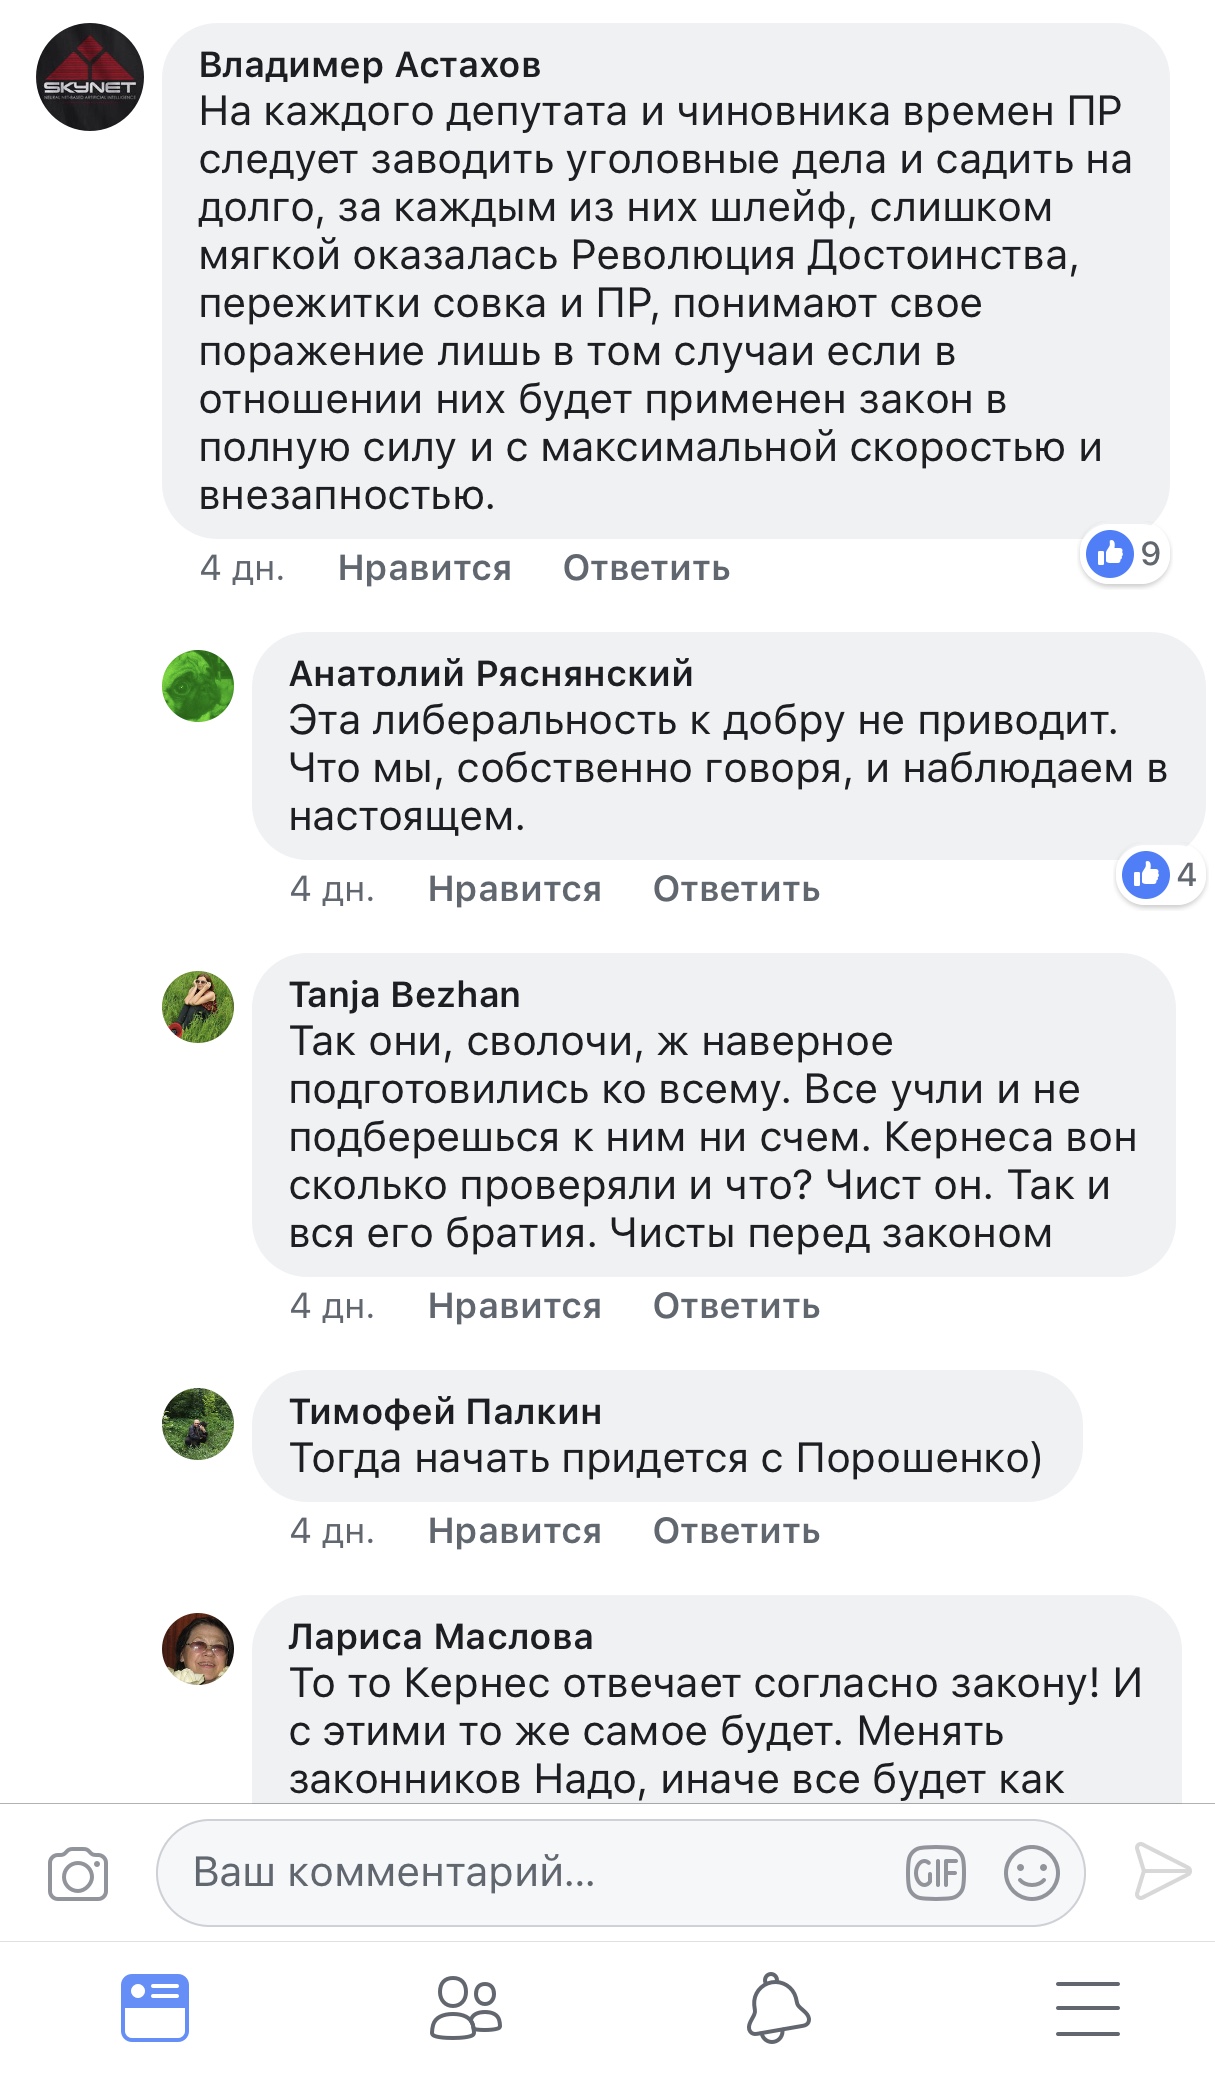 Харьковский депутат Ткаченко обозвал избирателей «ублюдками», «сволотой» и «подонками», - СМИ